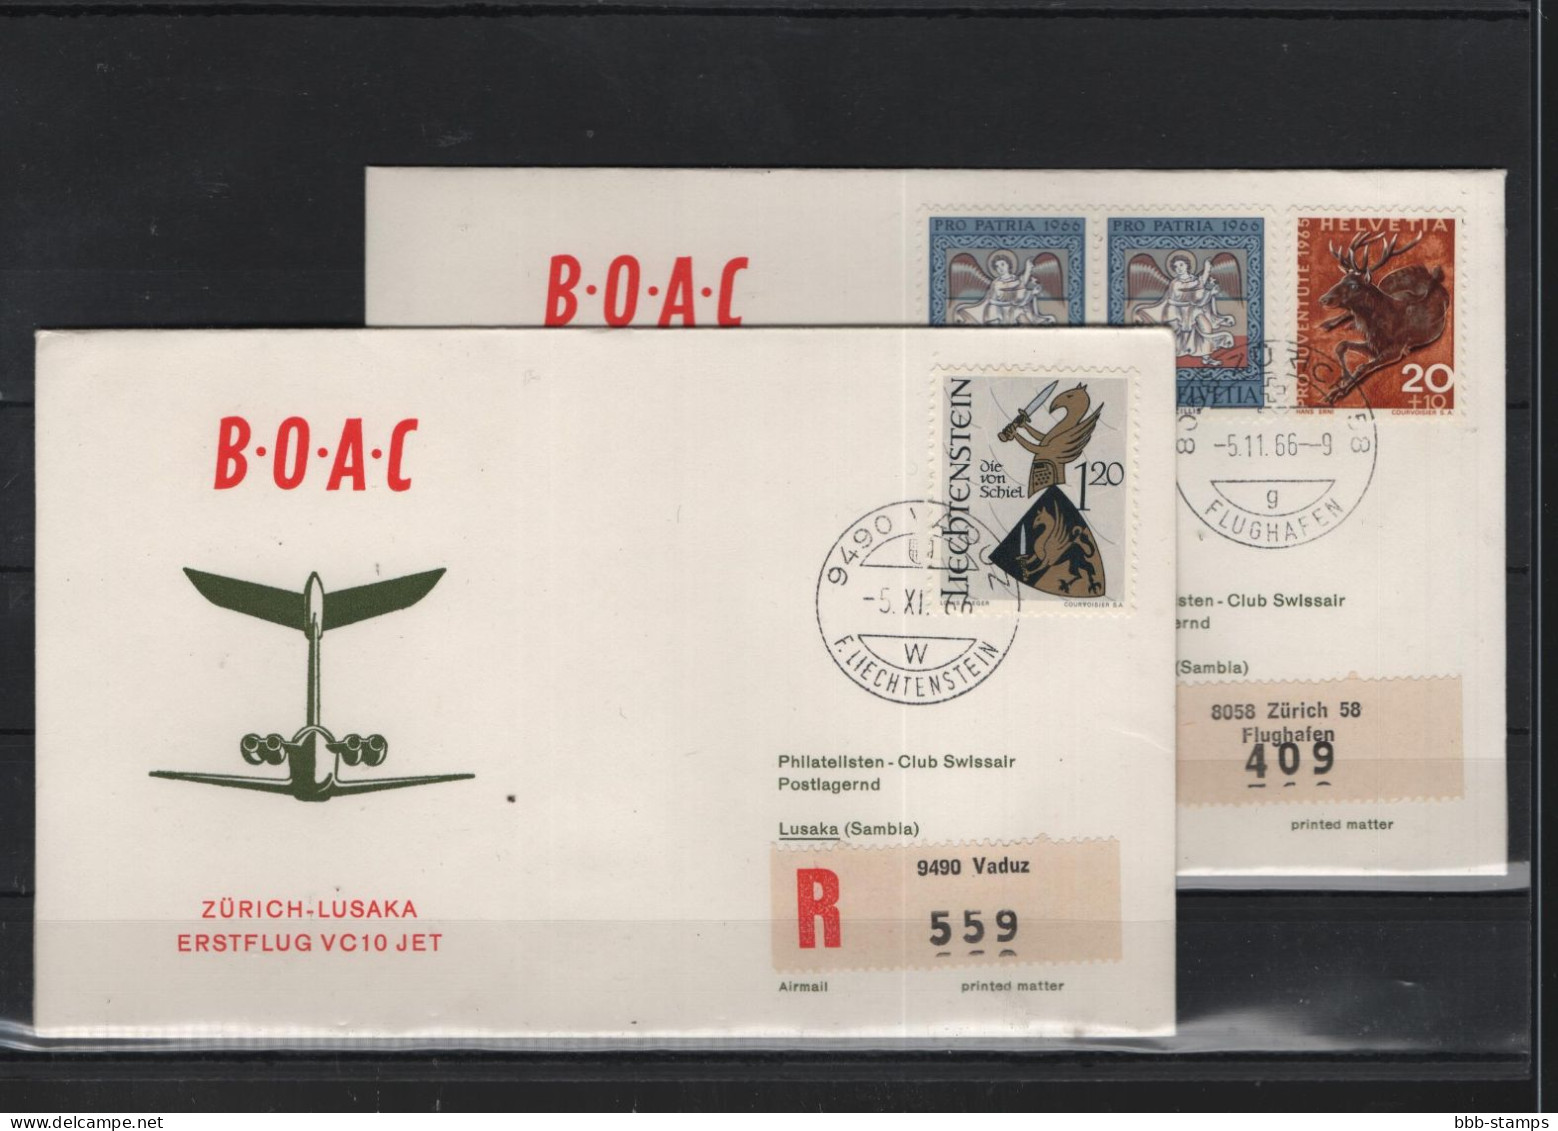 Schweiz Luftpost FFC BOAC 5.11.1966 Zürich -  Lusaka - First Flight Covers